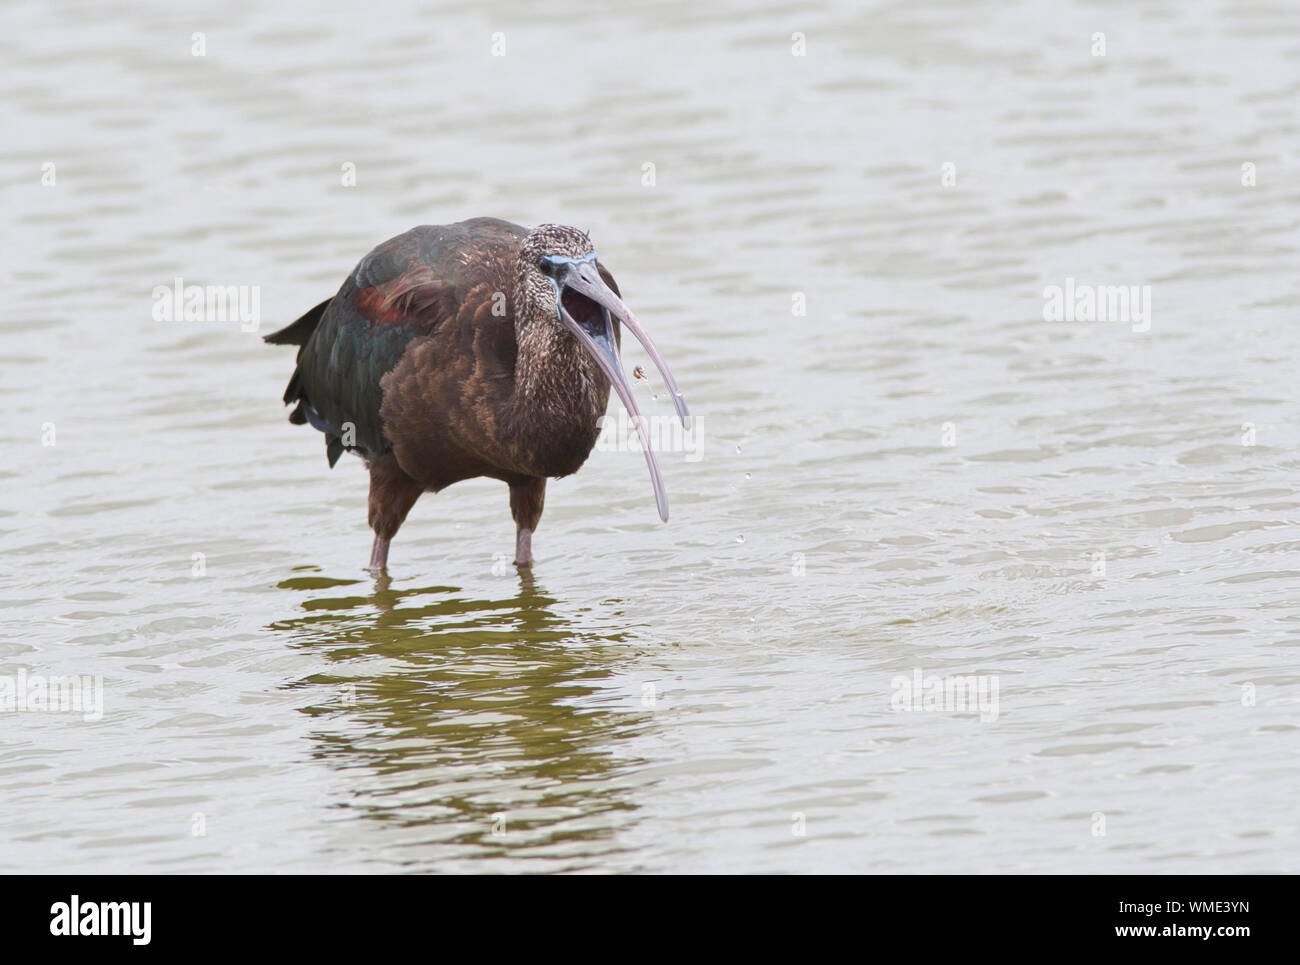 Glossy ibis (Plegadis falcinellus) Nahrungssuche im flachen Wasser. Der Vogel ist gefangen, was scheint, eine Schnecke oder andere kleine Muschel. Stockfoto